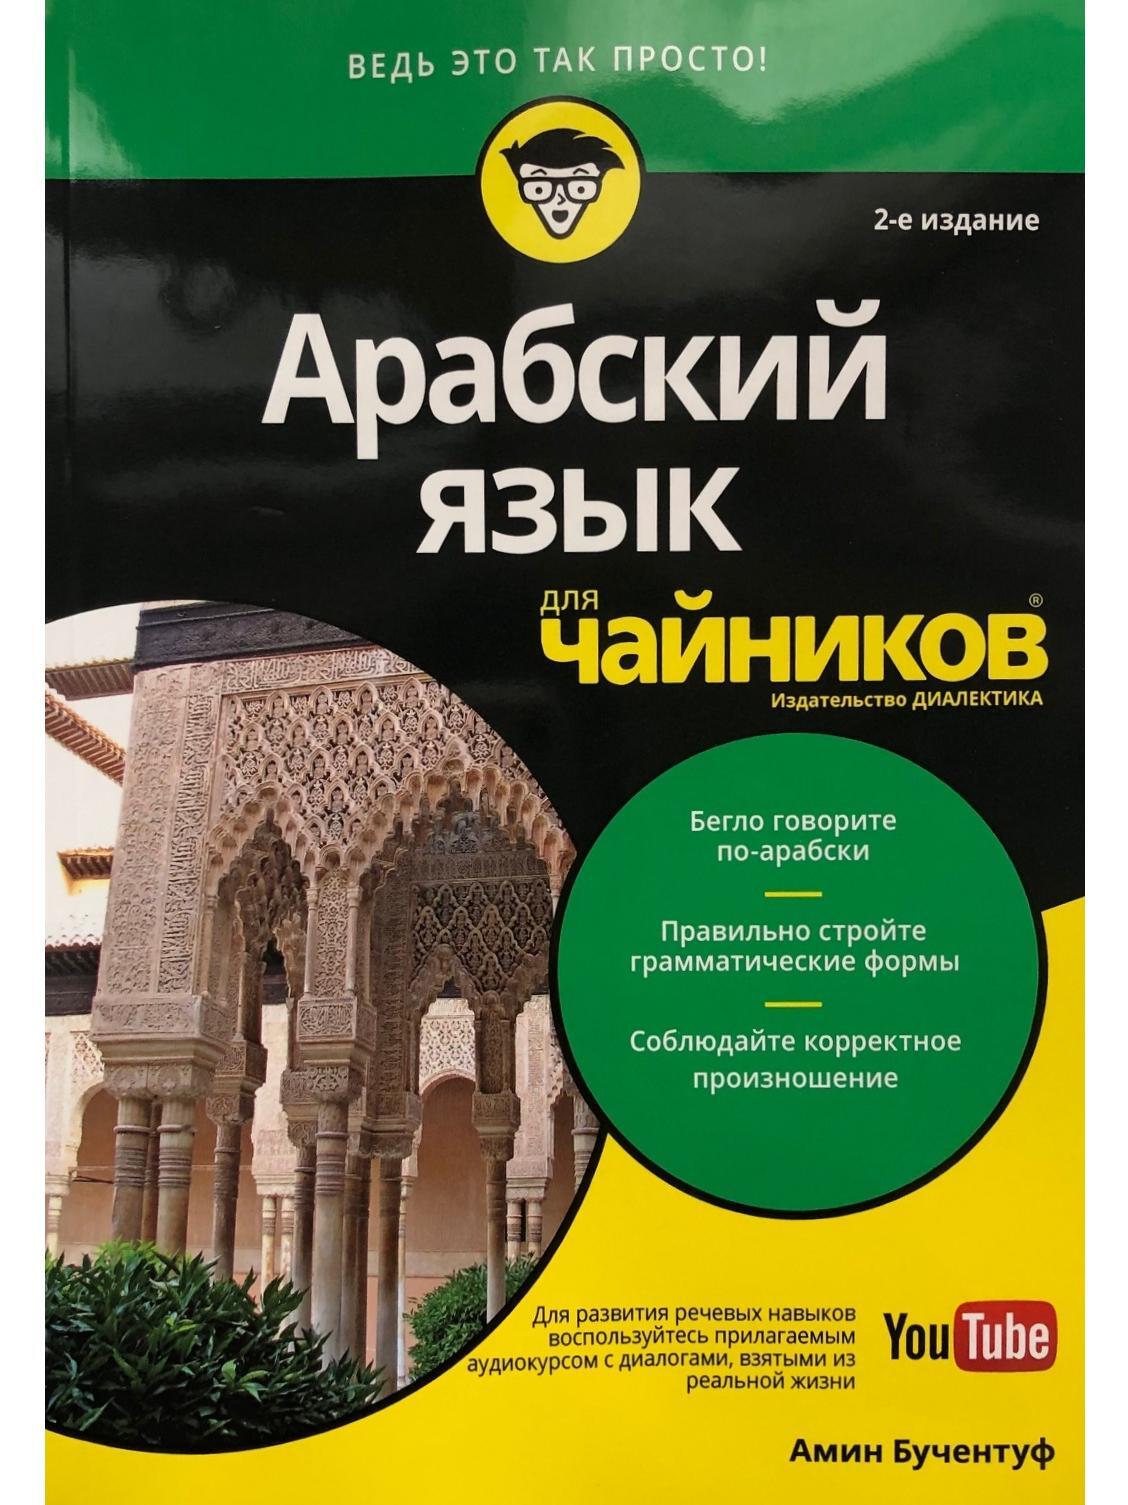 Арабский для начинающих самоучитель. Арабский язык. Арабский чайник. Арабский язык для чайников. Книга для начинающего арабского языка.